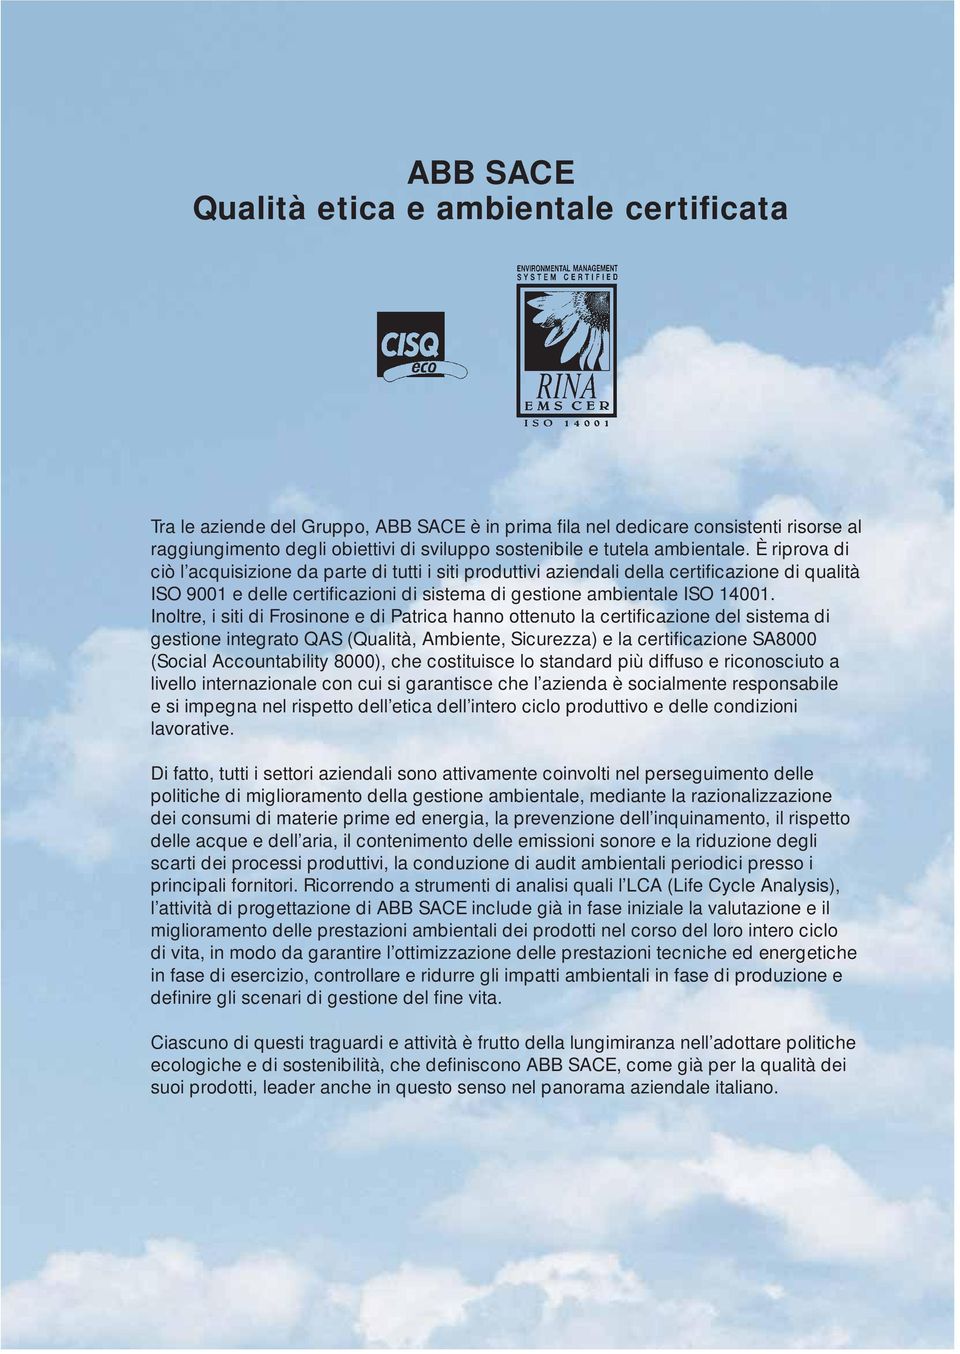 Inoltre, i siti di Frosinone e di Patrica hanno ottenuto la certificazione del sistema di gestione integrato QAS (Qualità, Ambiente, Sicurezza) e la certifi cazione SA8 (Social Accountability 8), che